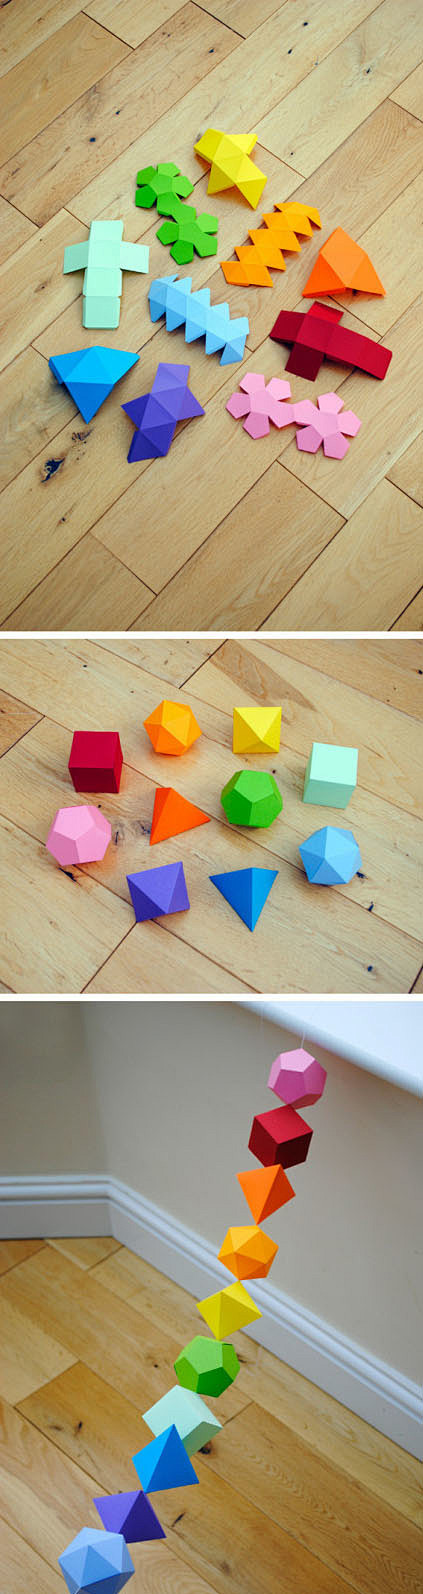 简单的几何形体折纸手工教程 正方形 圆形...